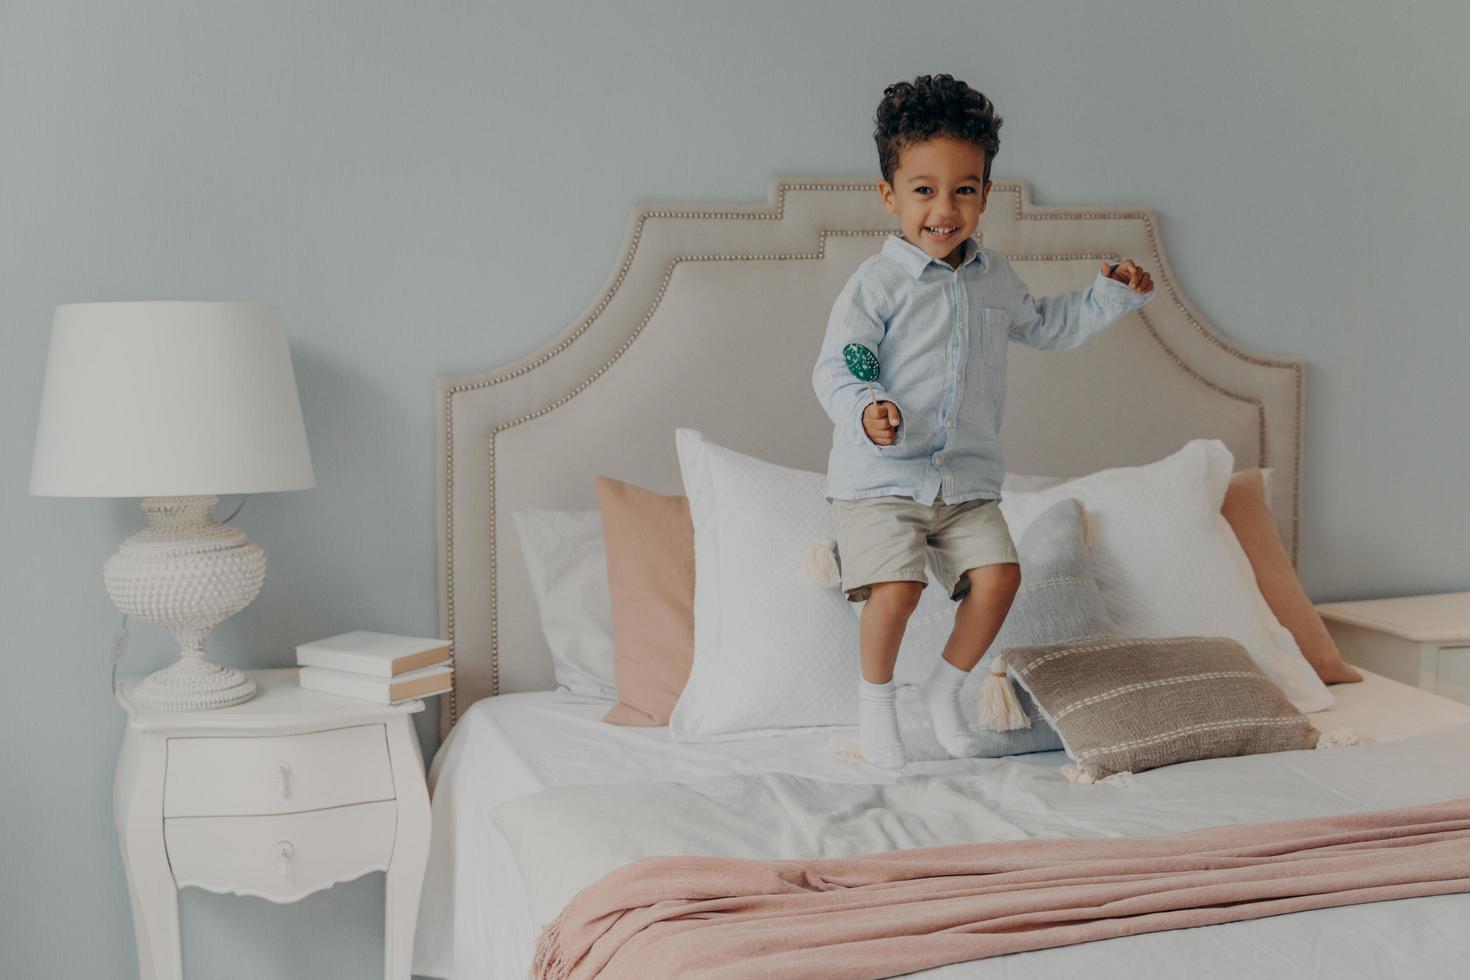 niño afroamericano enérgico saltando con piruleta en el colchón de la cama foto